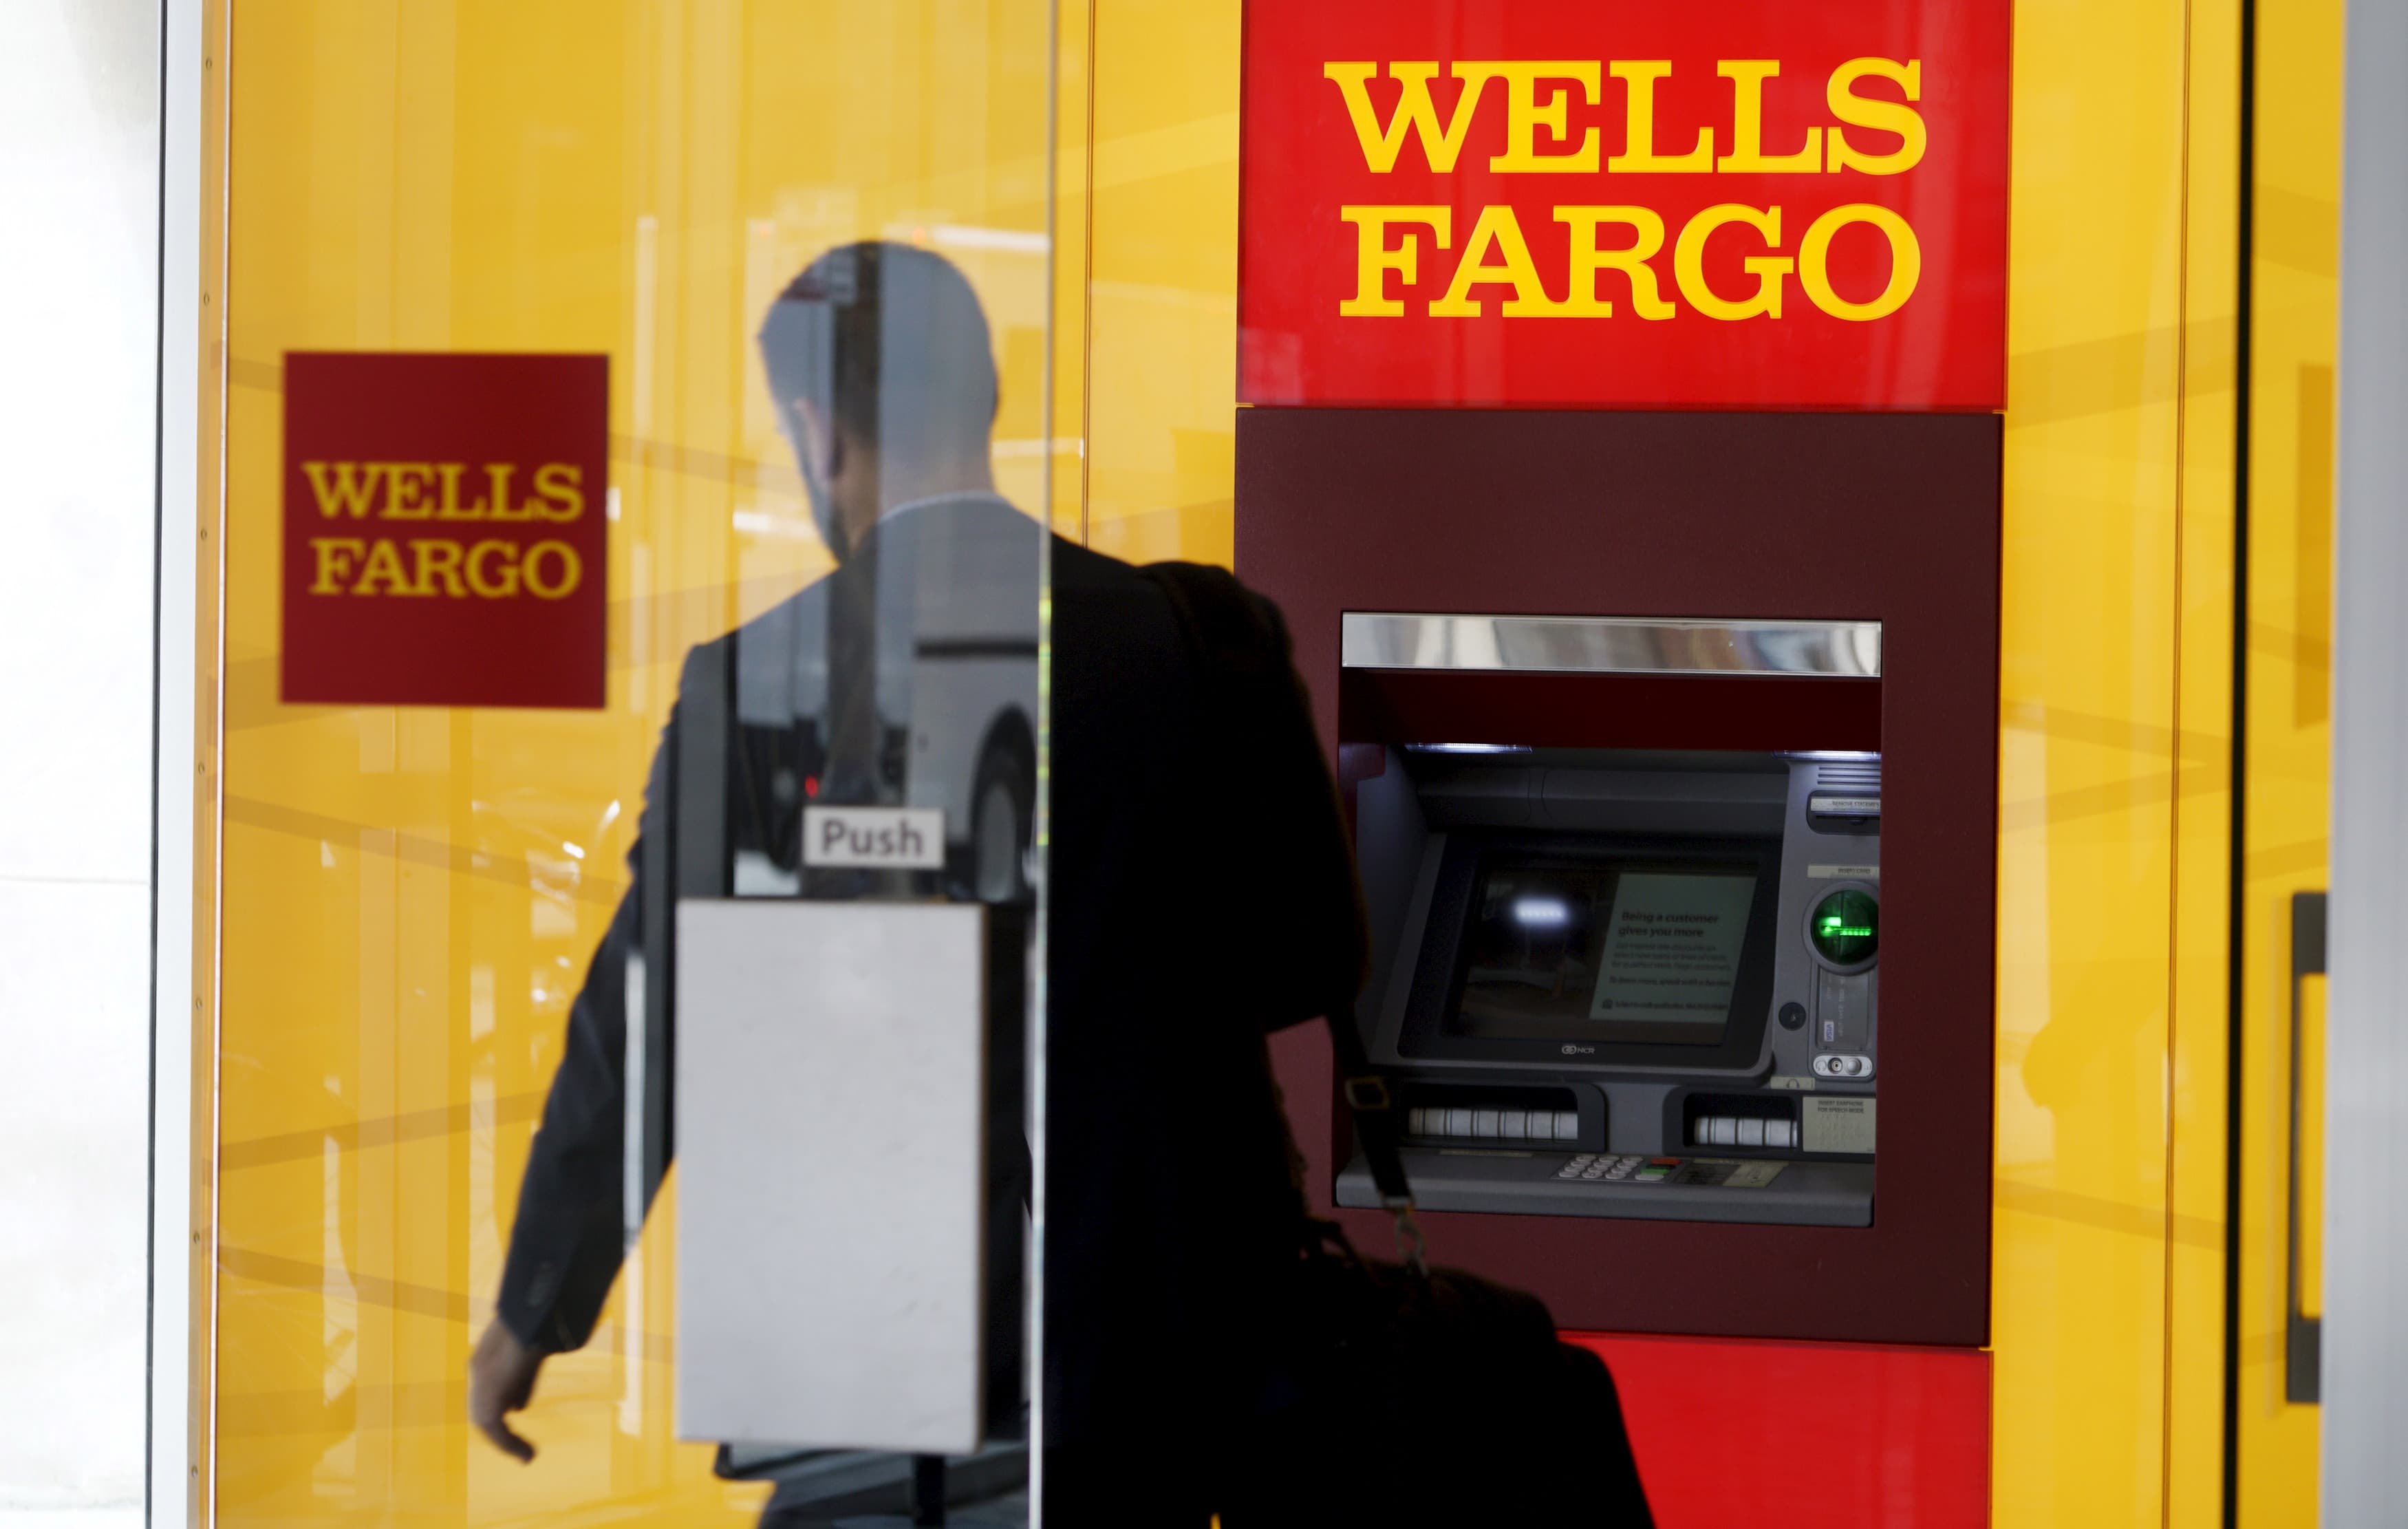 Wells Fargo-ն 3.7 միլիարդ դոլար է վճարել անցյալի սկանդալների համար։ Ահա թե ինչու ենք մենք դա համարում դրական